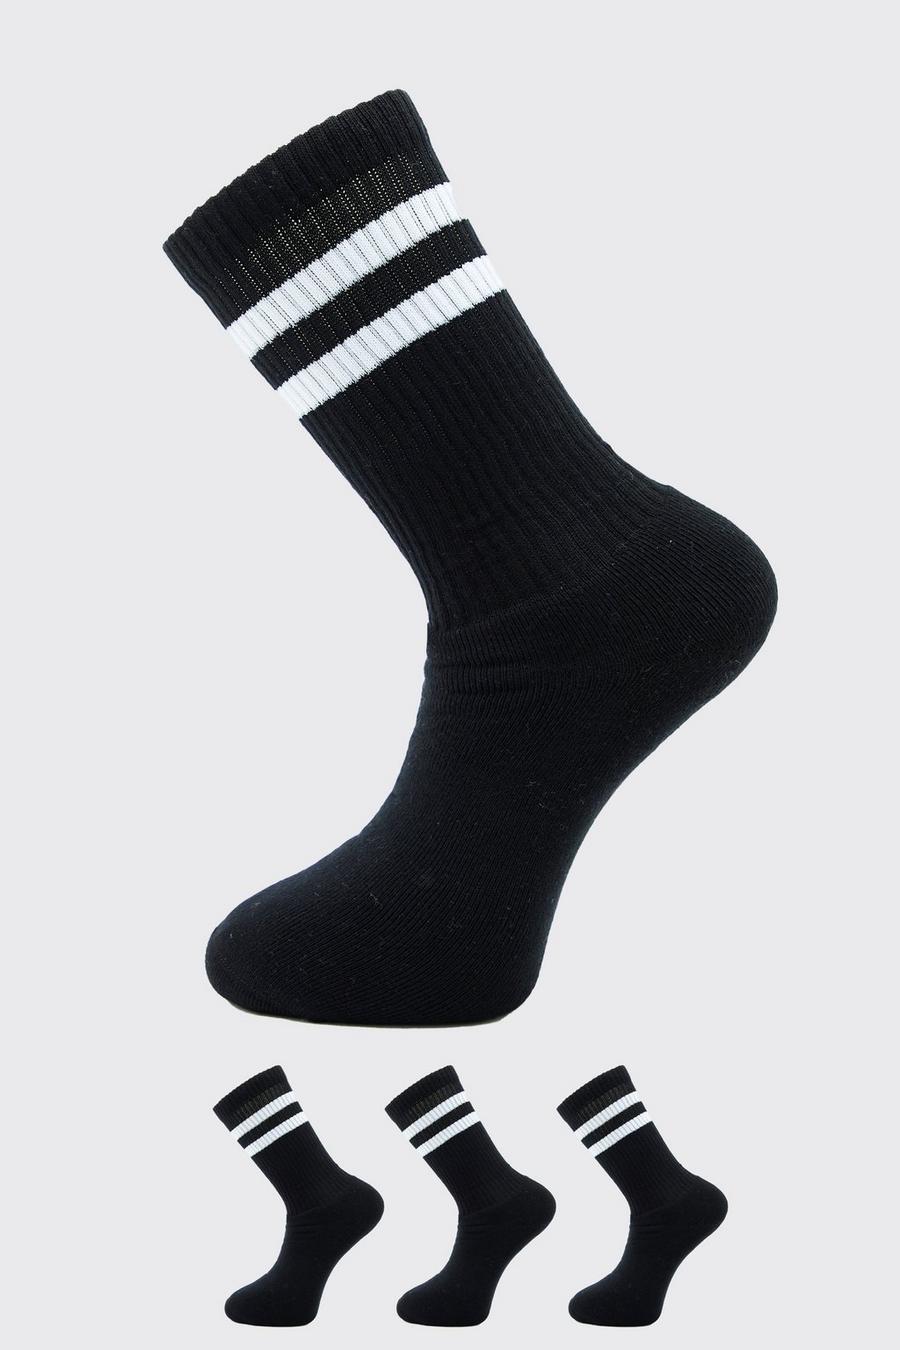 Pack de 3 pares de calcetines deportivos con rayas, Black negro